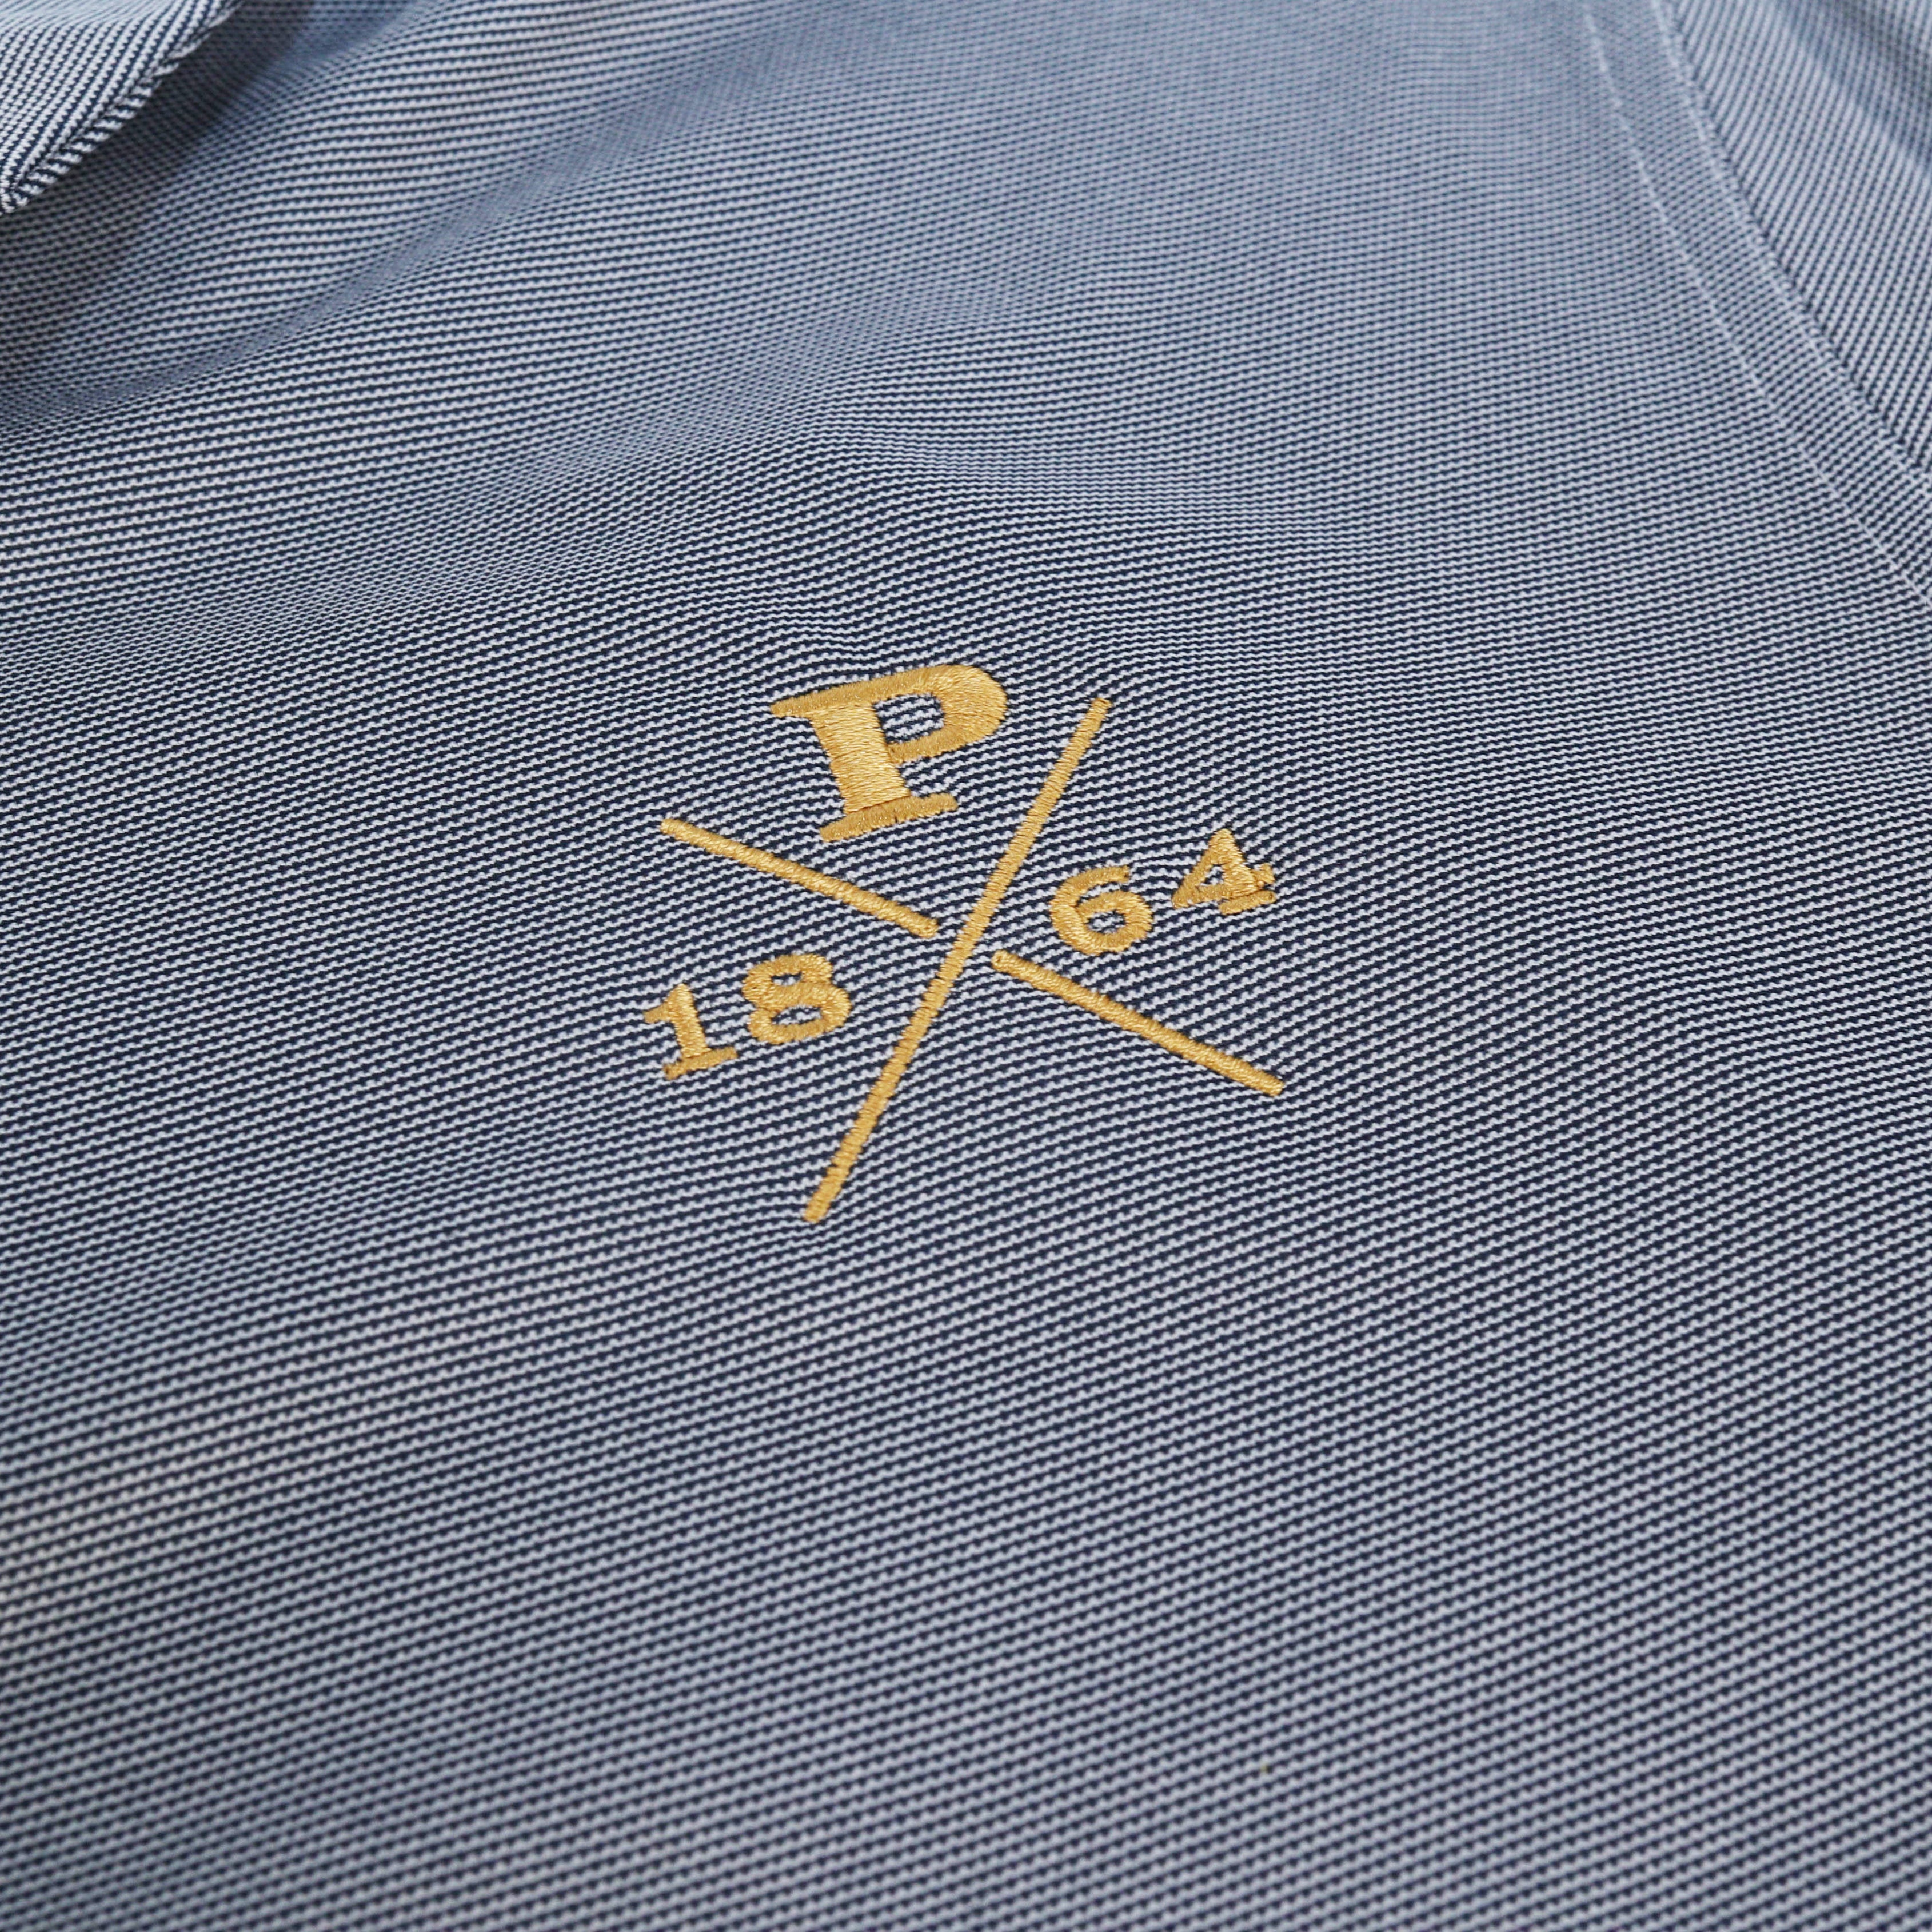 Nike 1864 Peddie Performance Polo Shirt